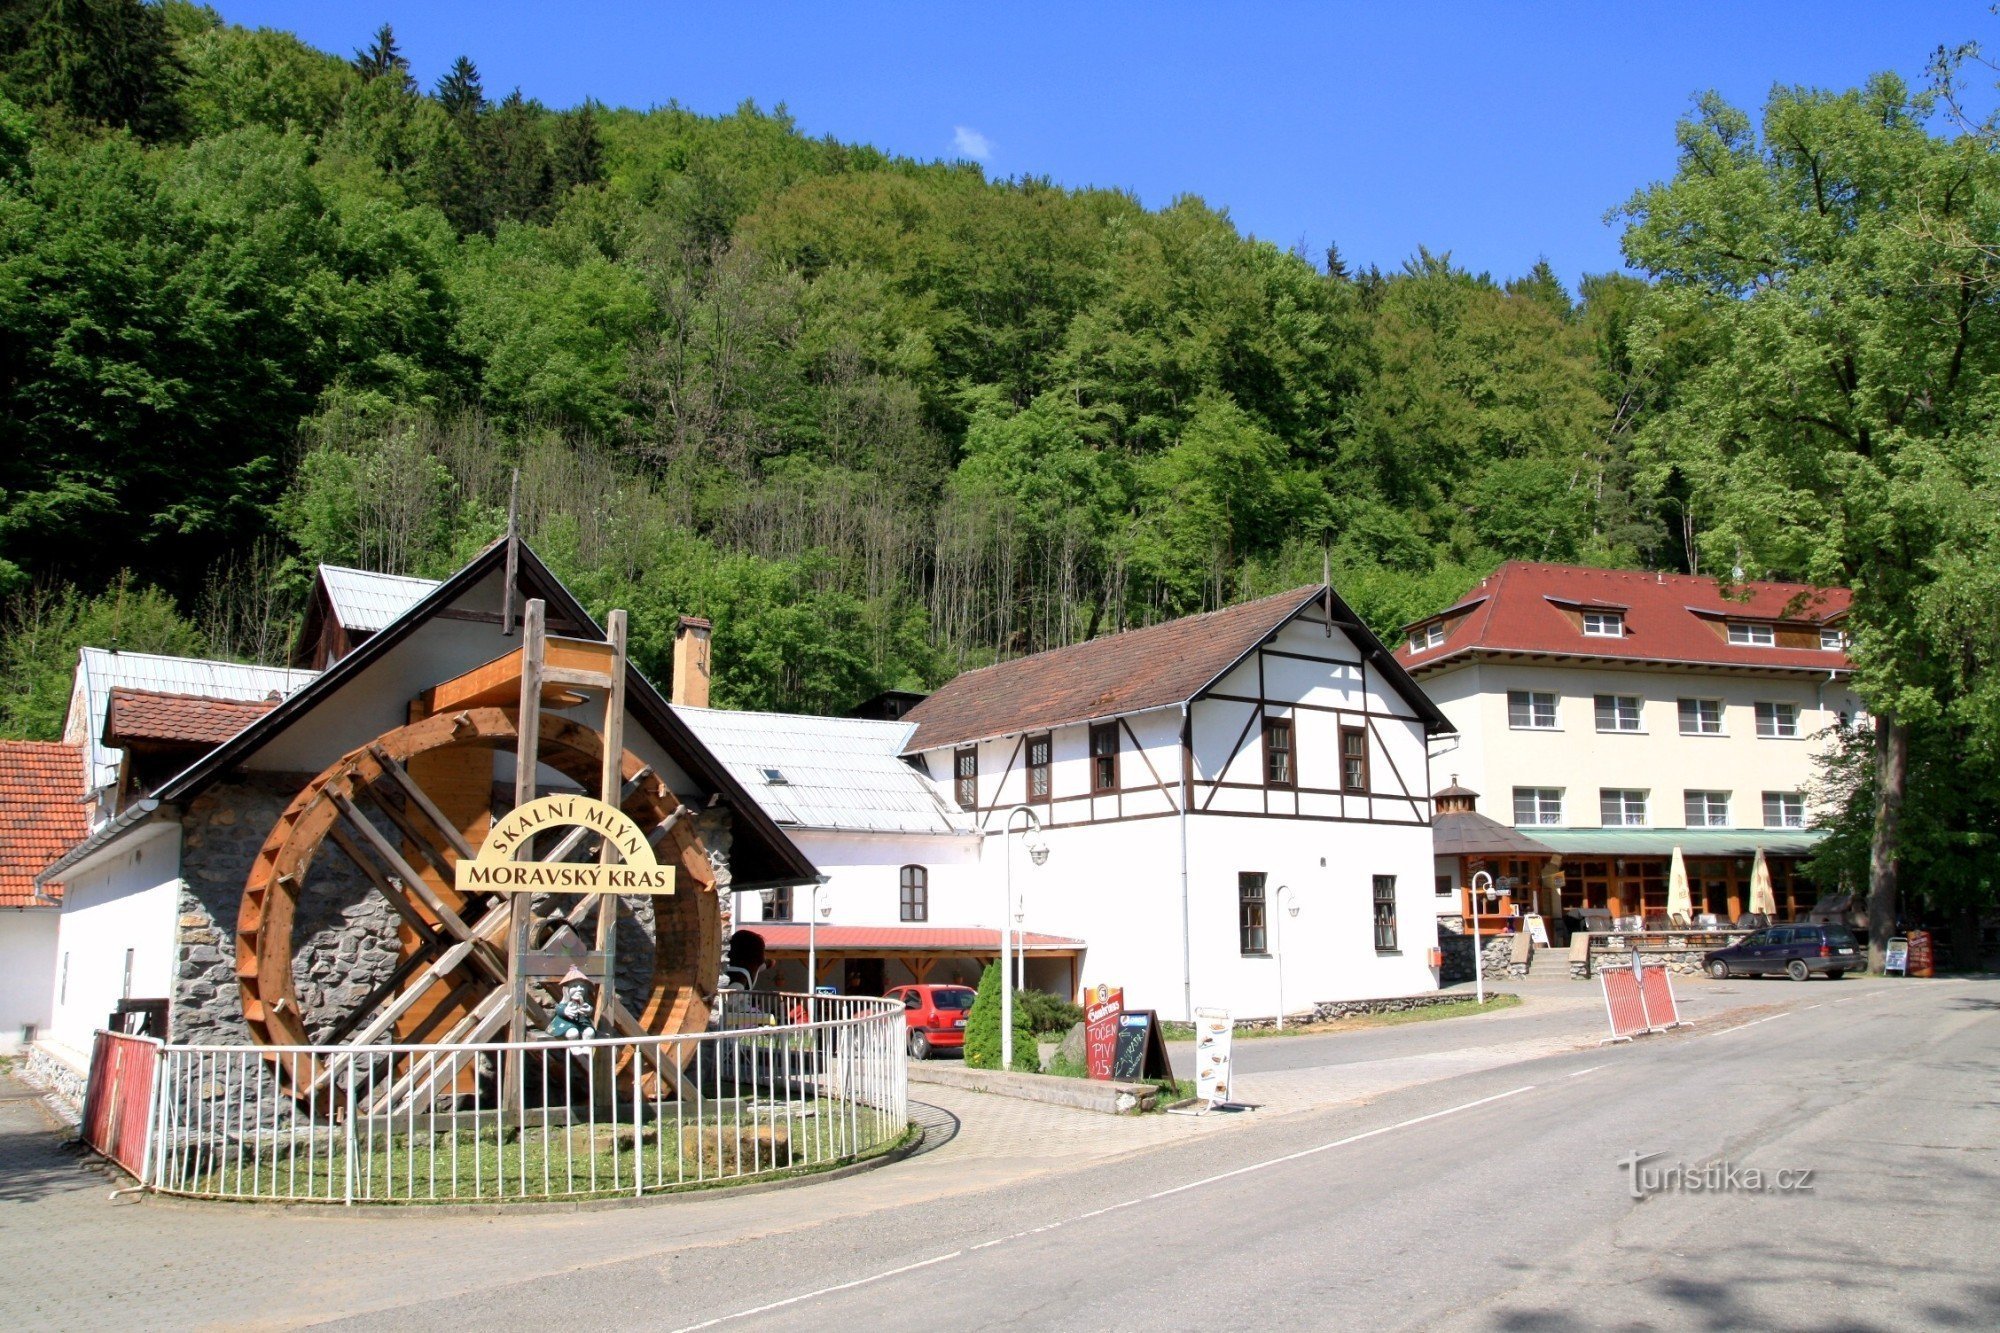 Skalní Mlýn - a mill with a hotel